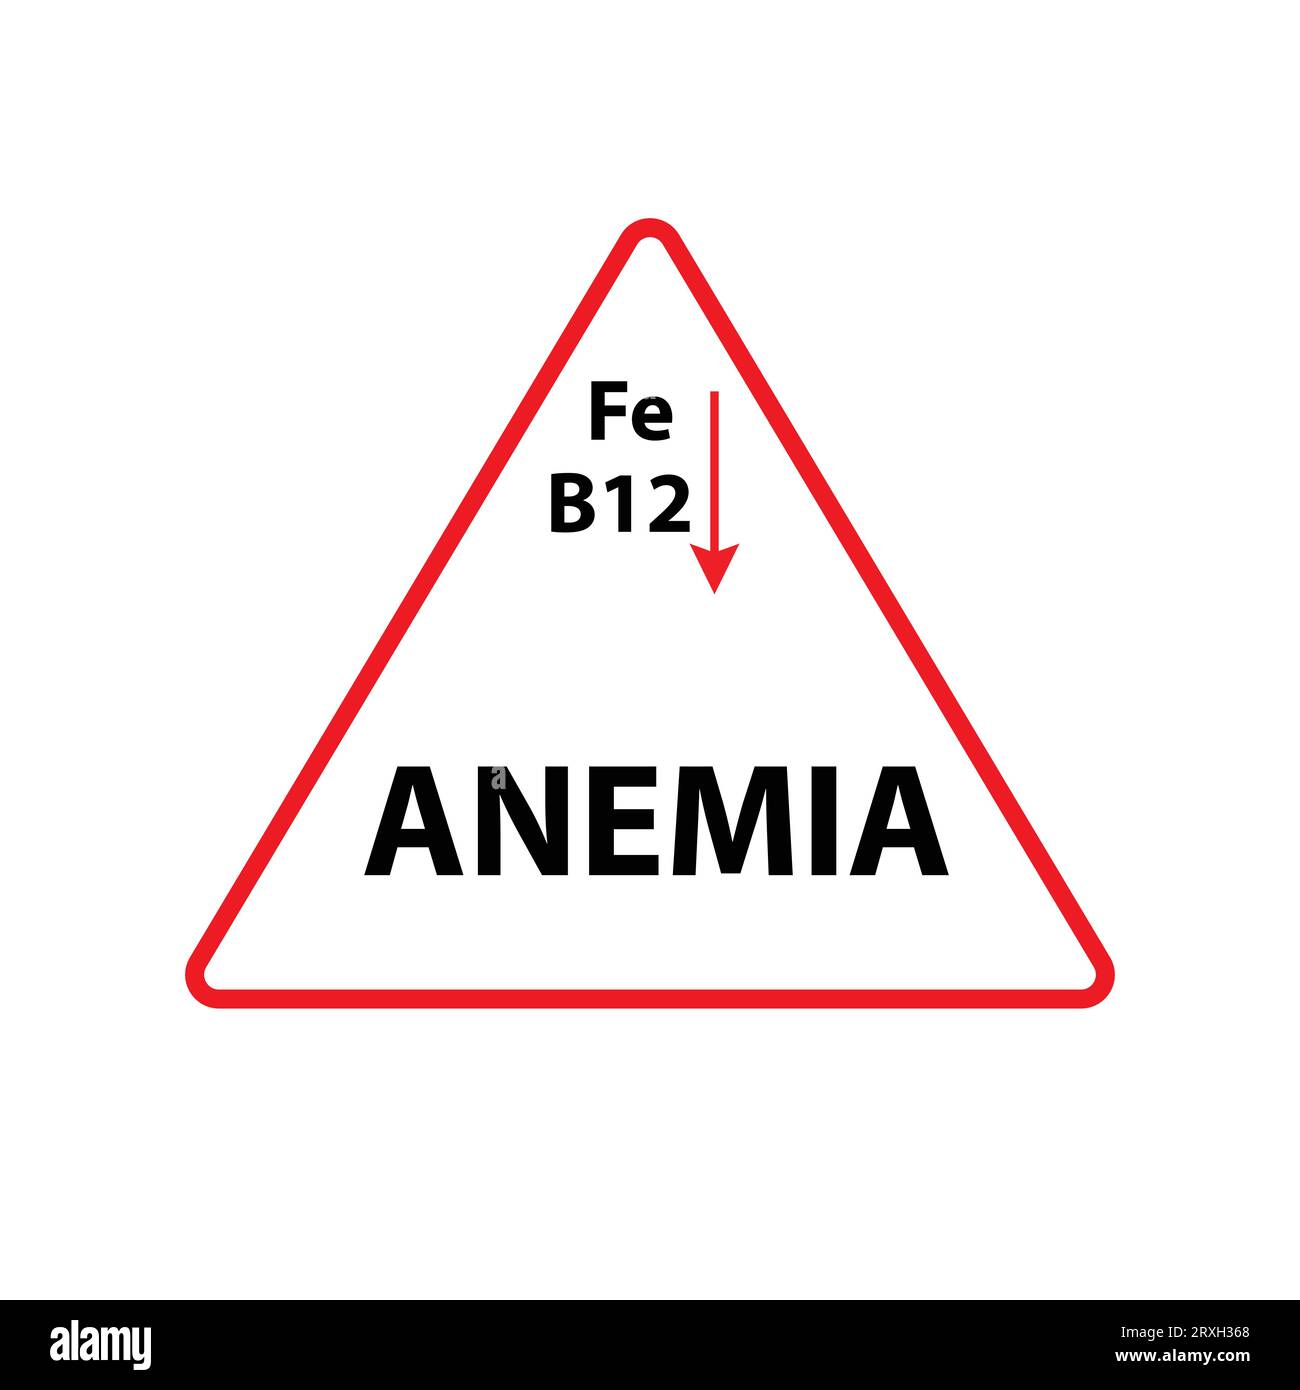 Triangle rouge avec texte anémie et symbole atomique de fer et B12 avec une flèche rouge vers le bas Illustration de Vecteur